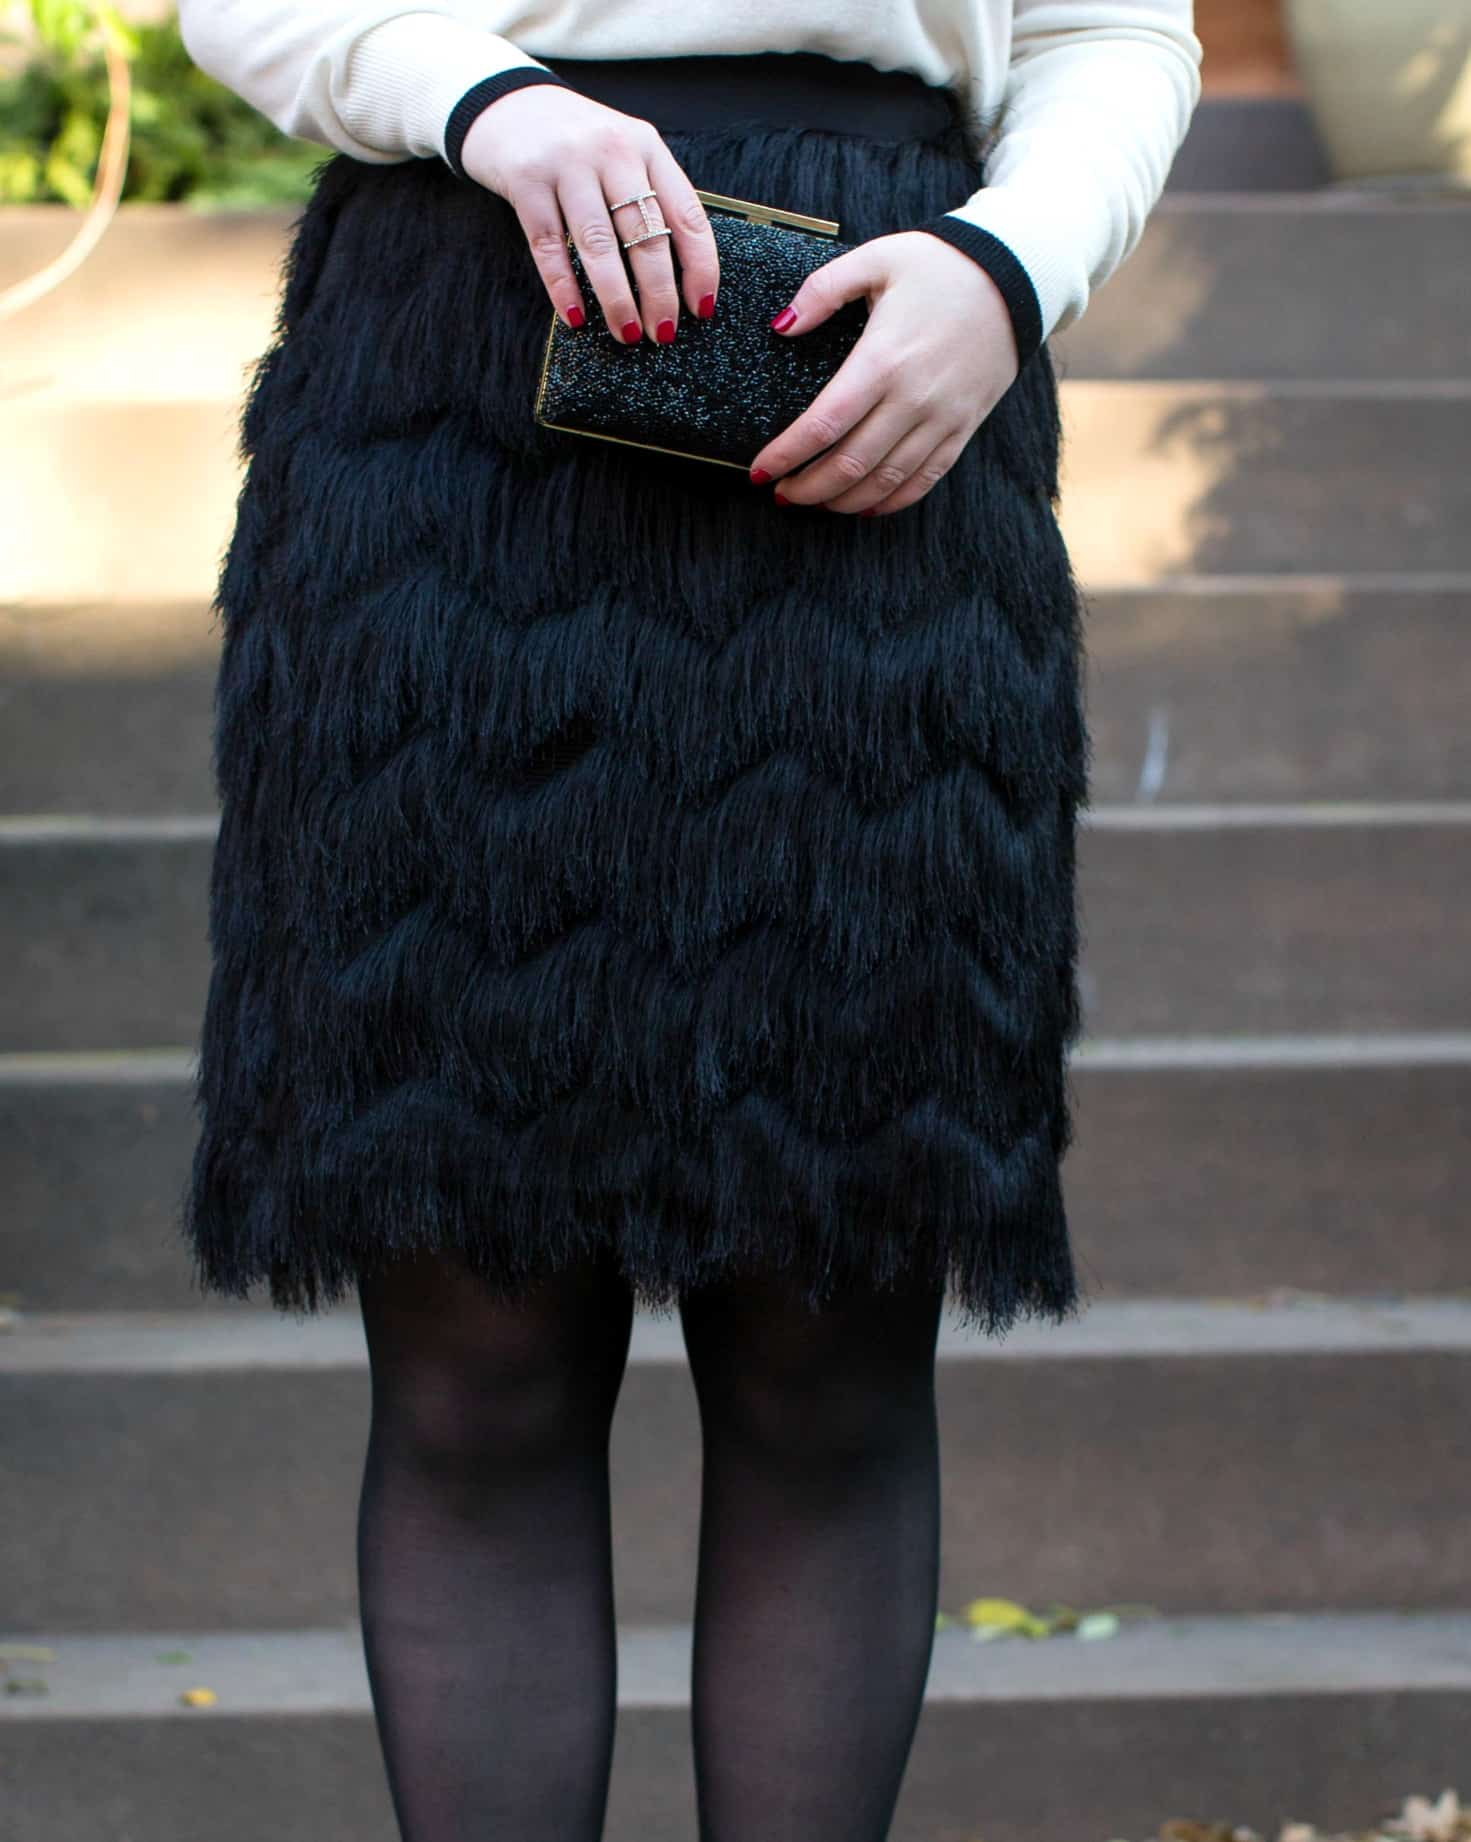 Festive Fringe Skirt I wit & whimsy